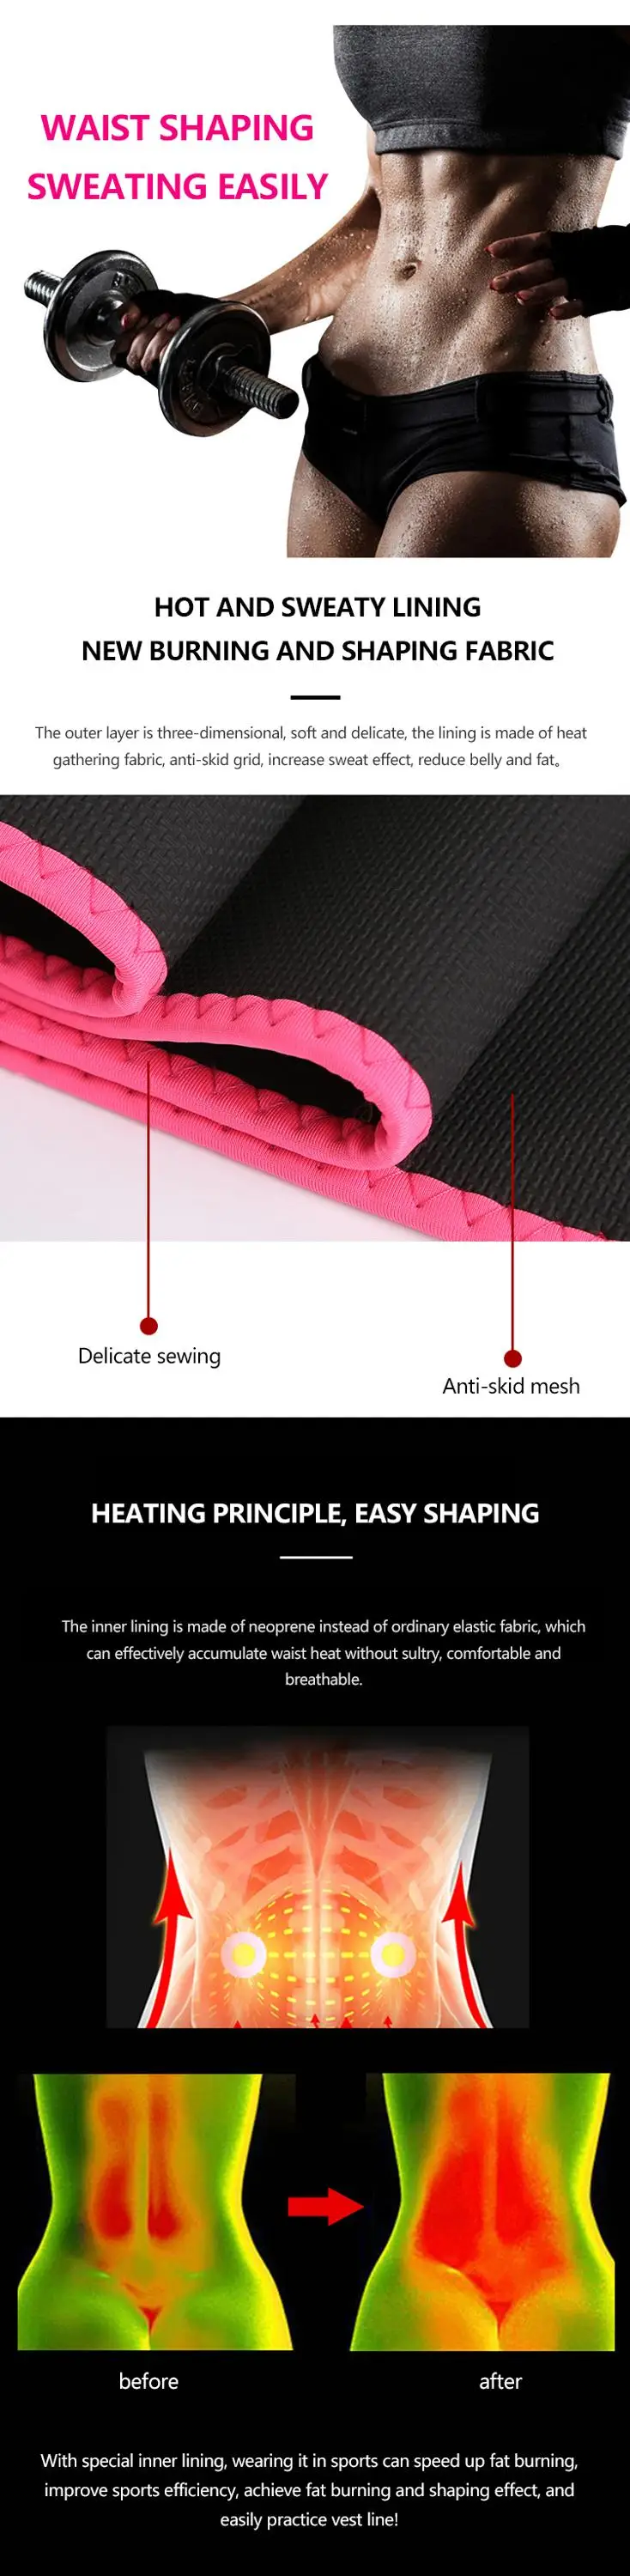 Enerup Free Sample Pocket Neoprene Sports Slimming Custom Waist Support Body Shaper Trimmer Trainer Belt